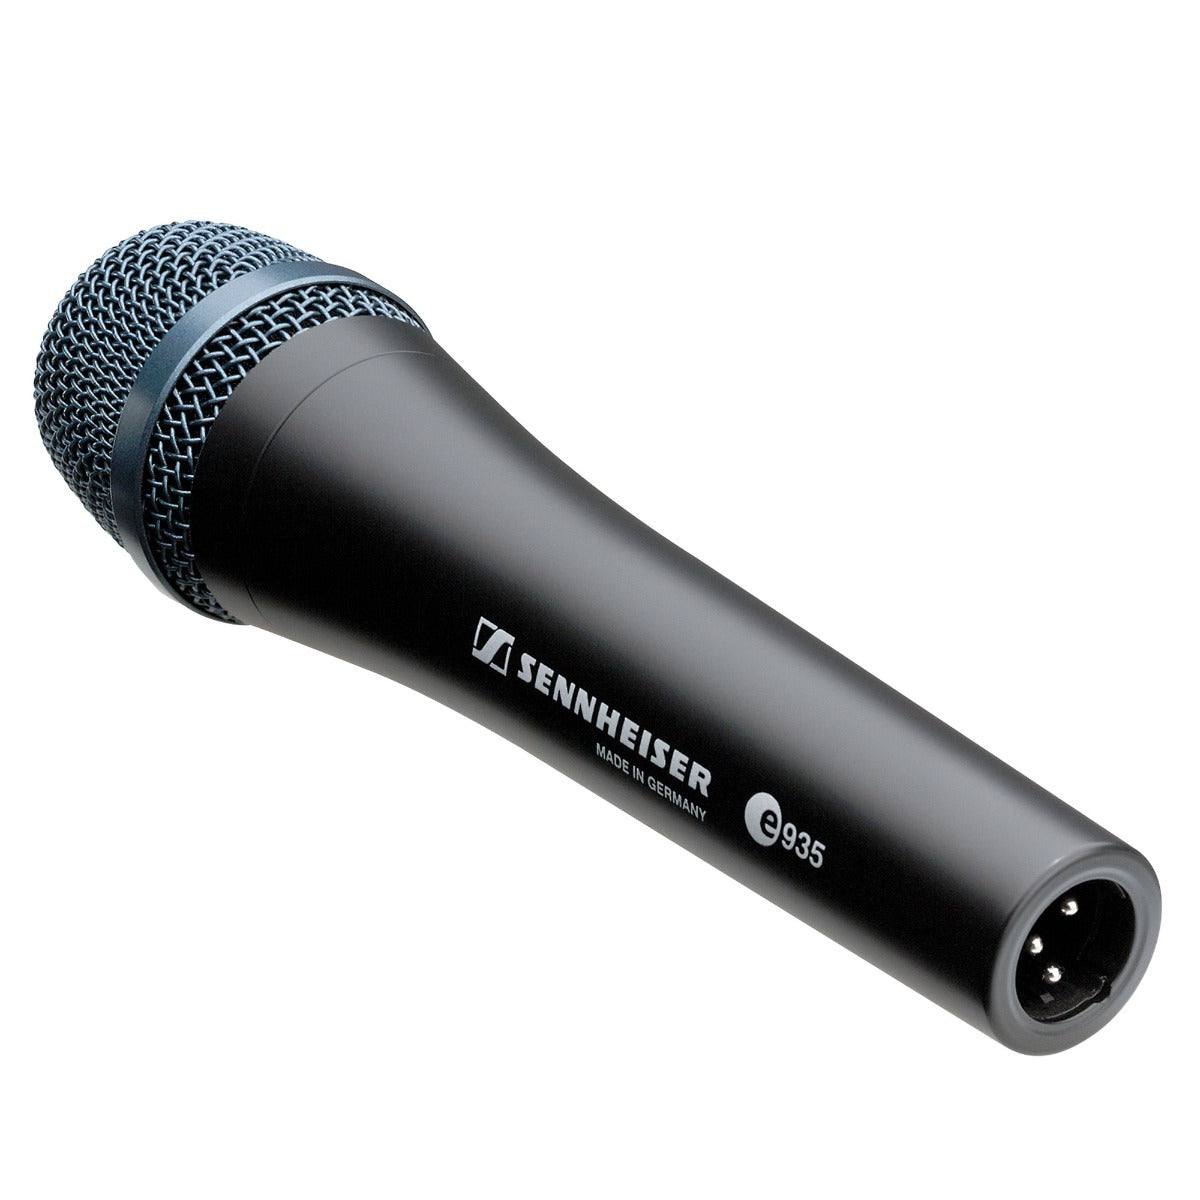 Sennheiser e 935 Dynamic Vocal Microphone